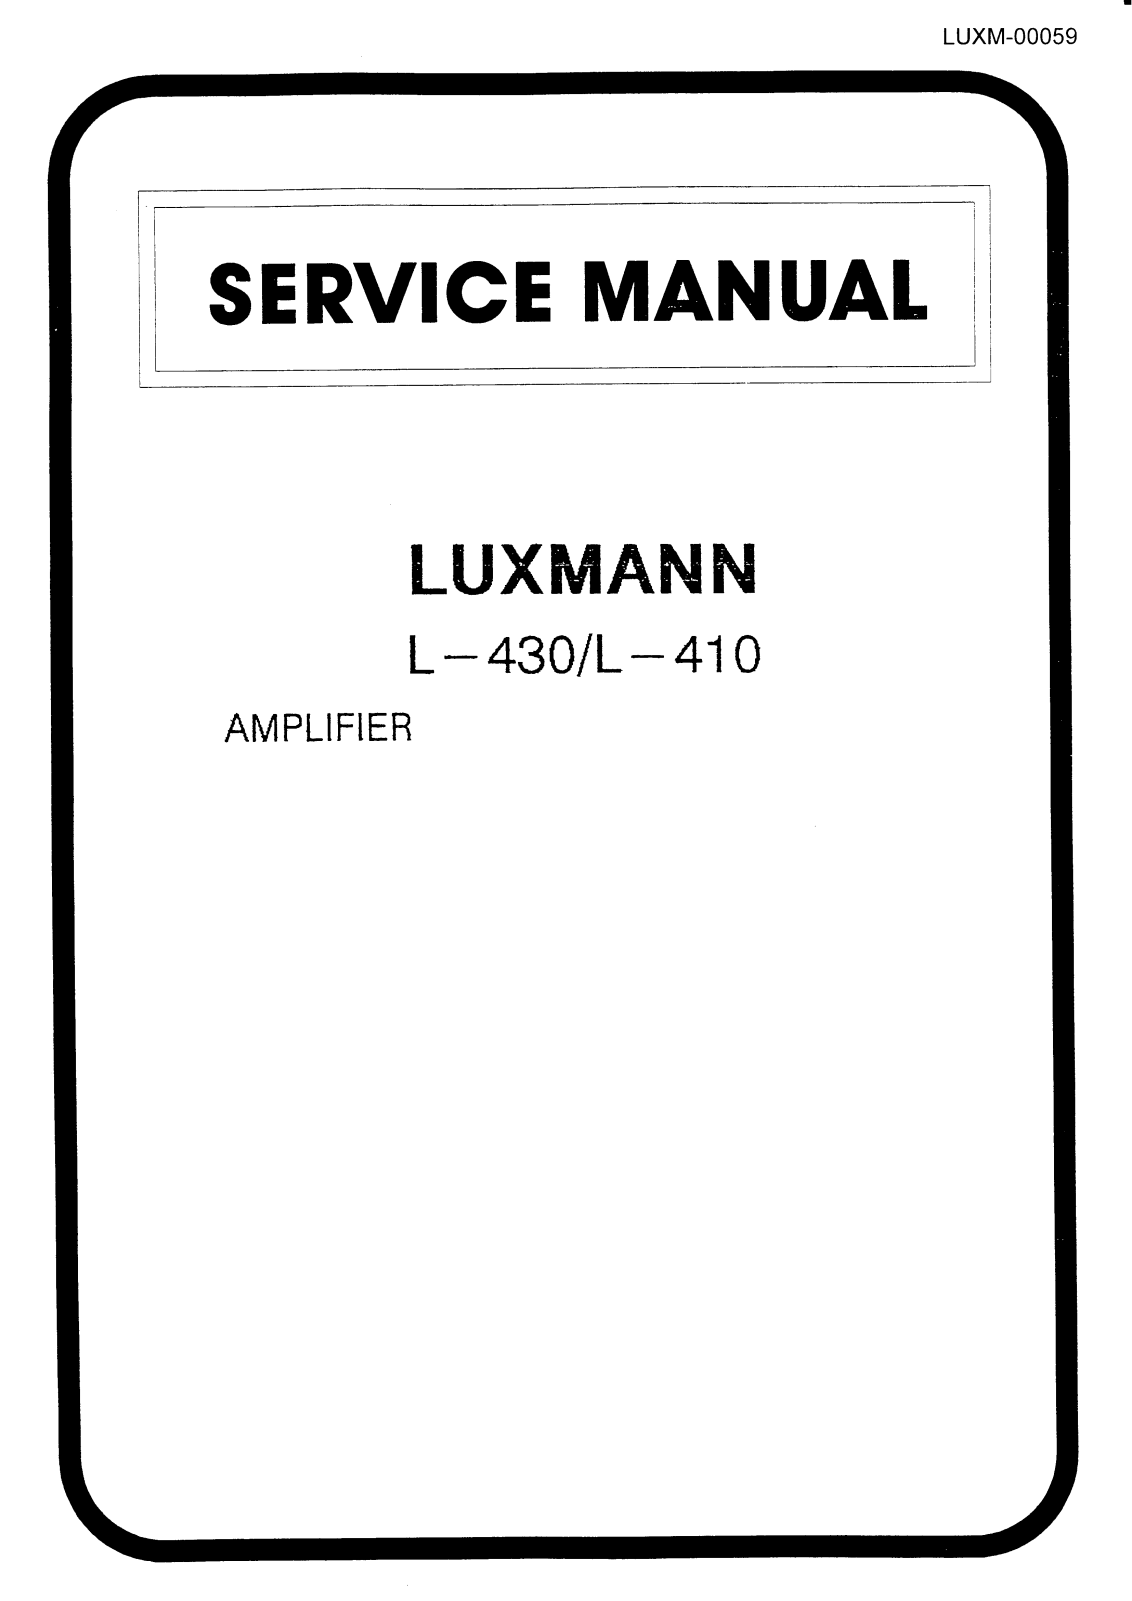 Luxman L-410, L-430 Service manual